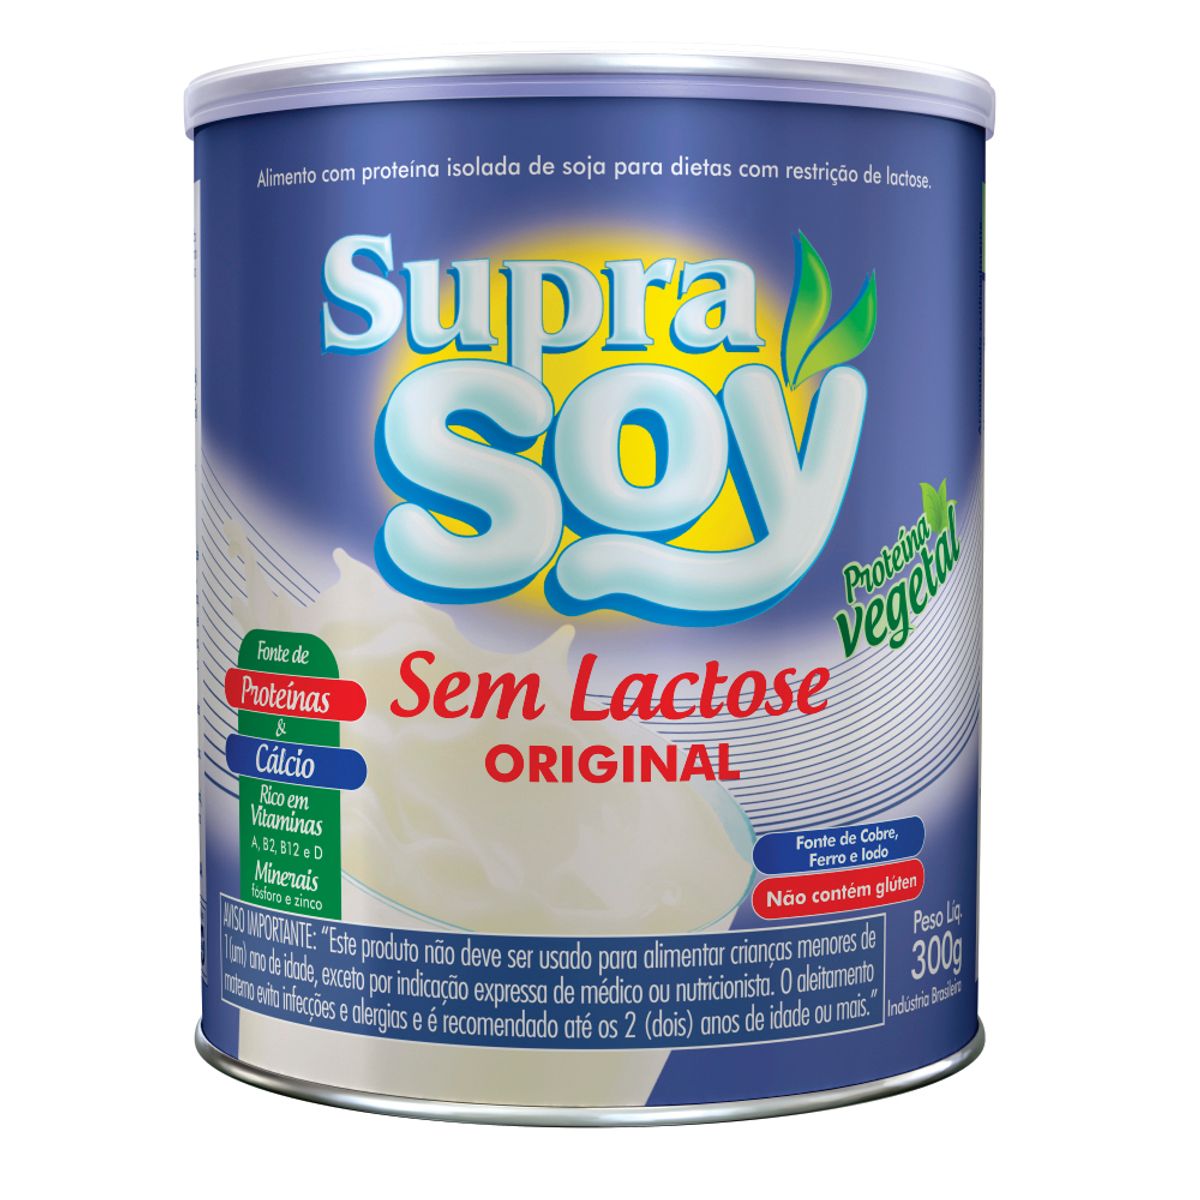 Alimento Supra Soy Original Sem Lactose 300g